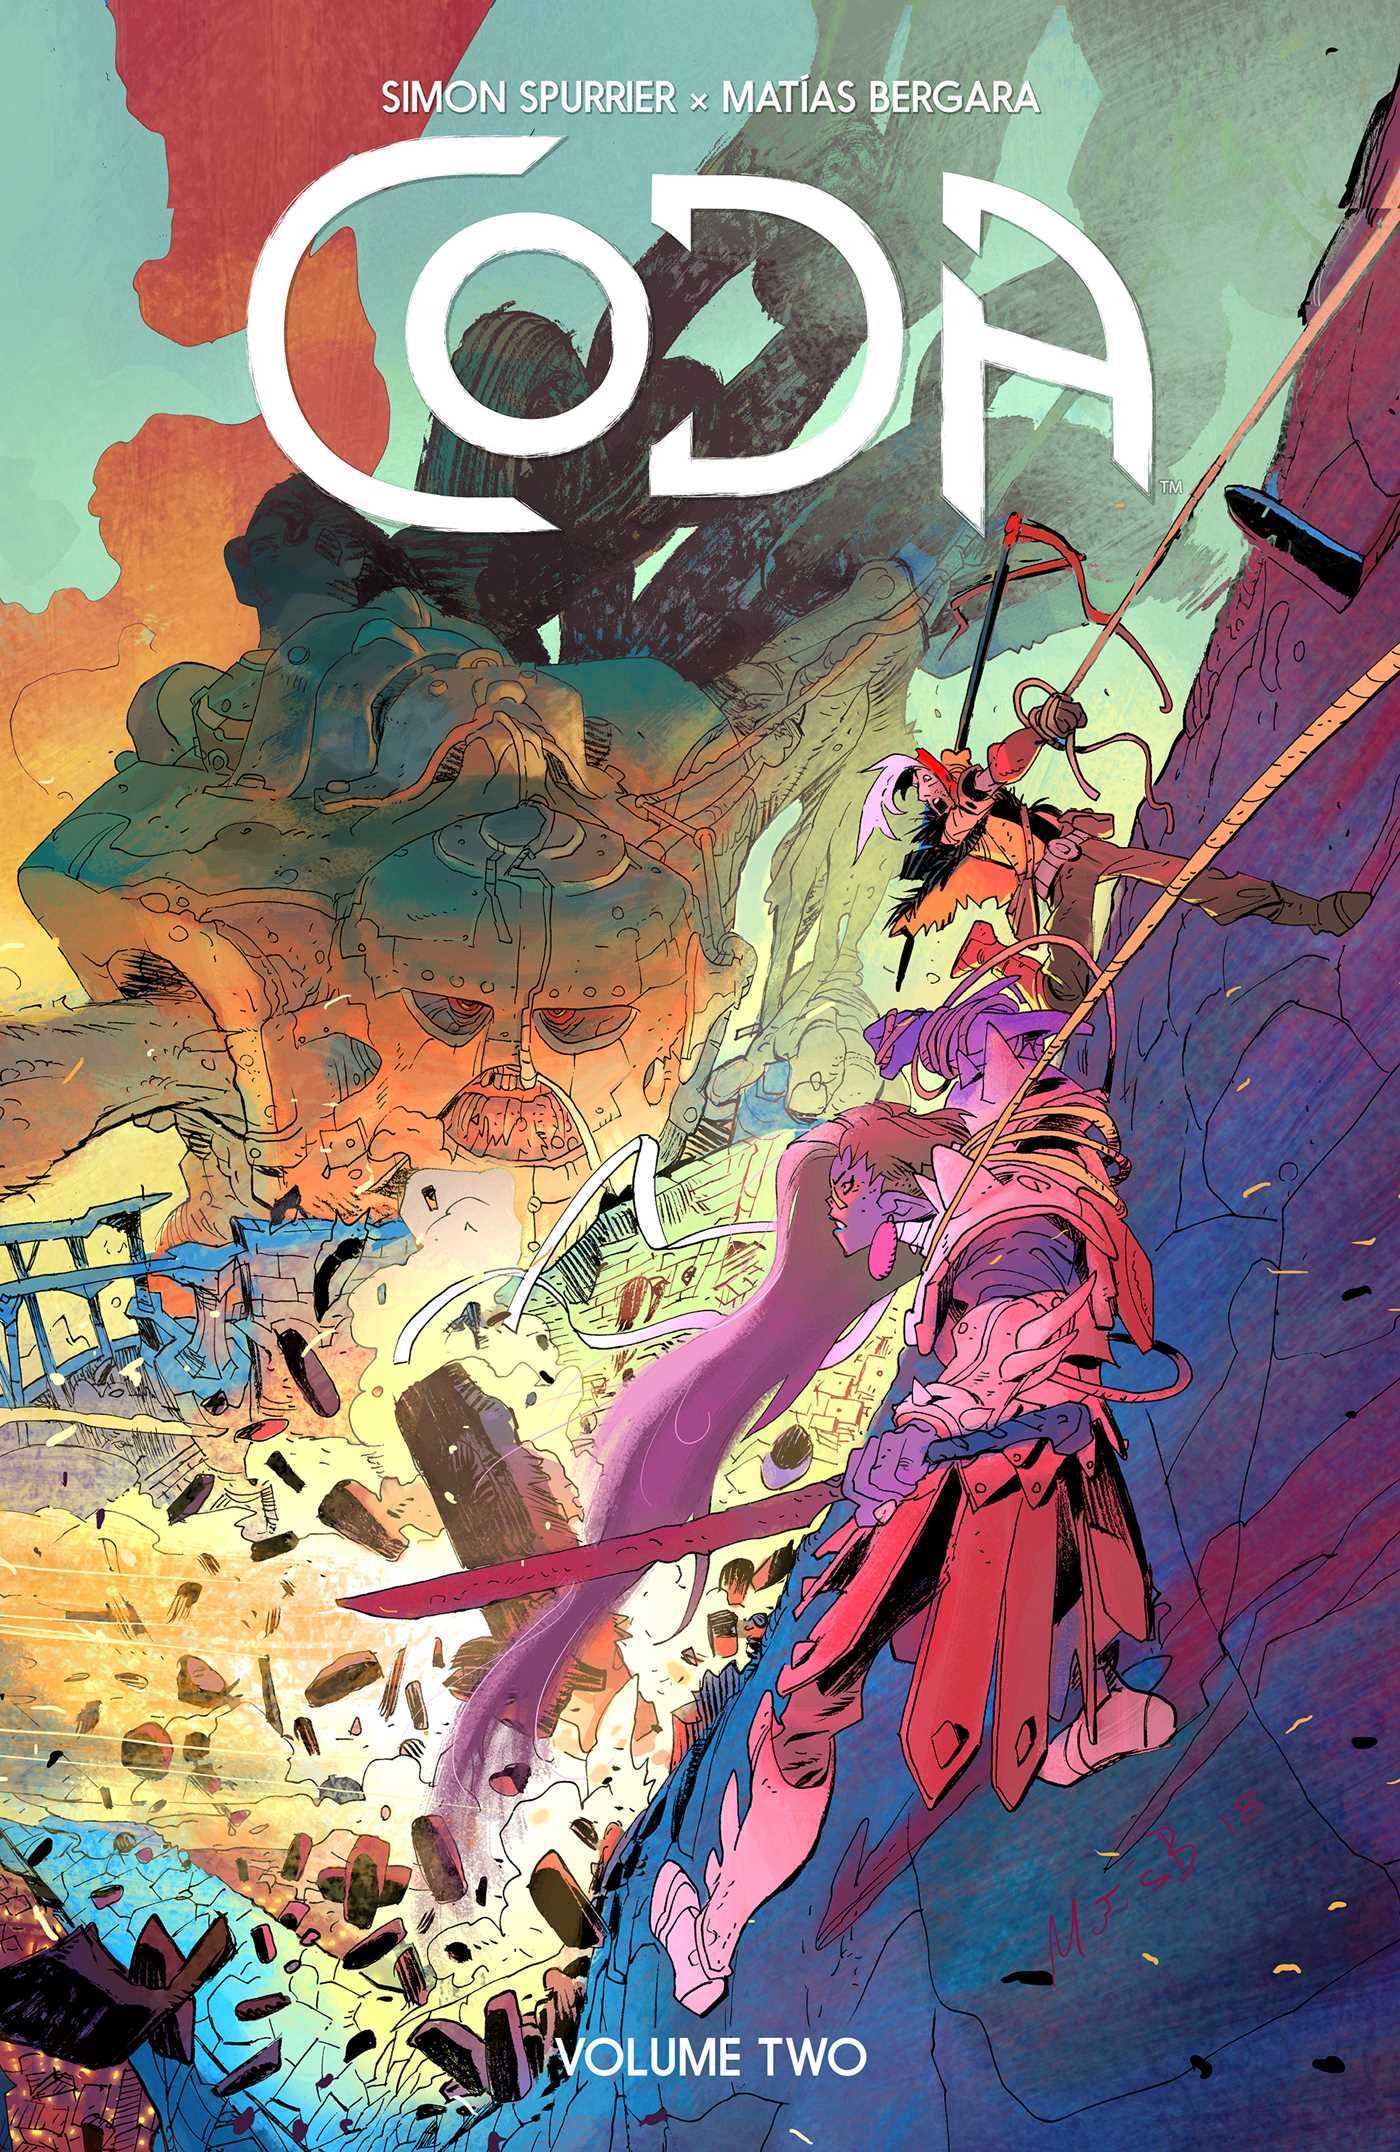 cover of Coda comic book